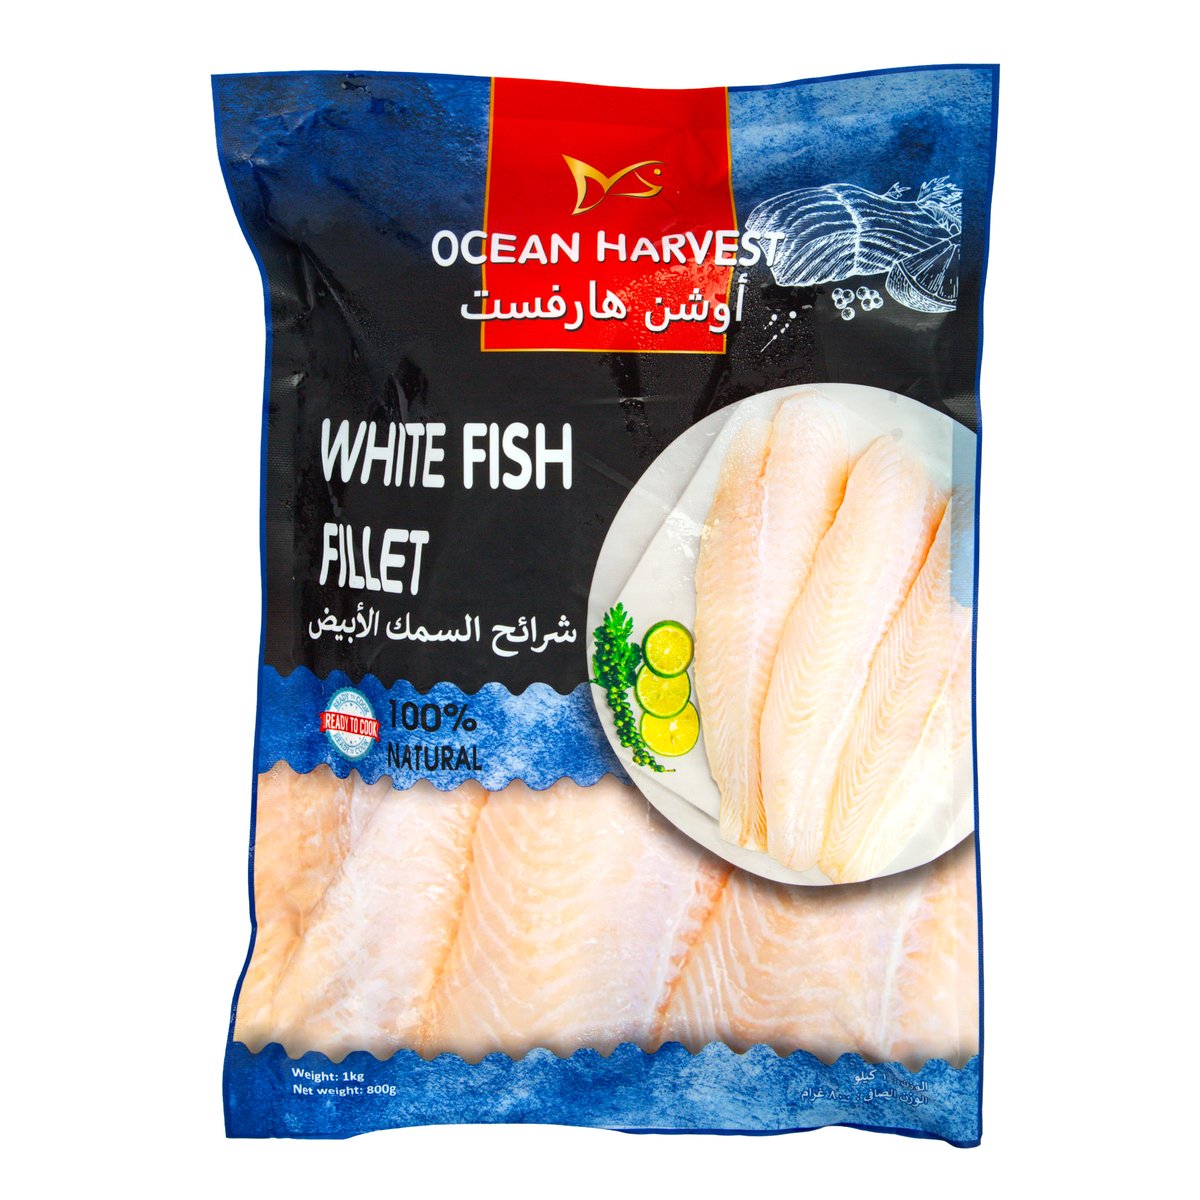 Ocean Harvest White Fish Fillet 1 kg